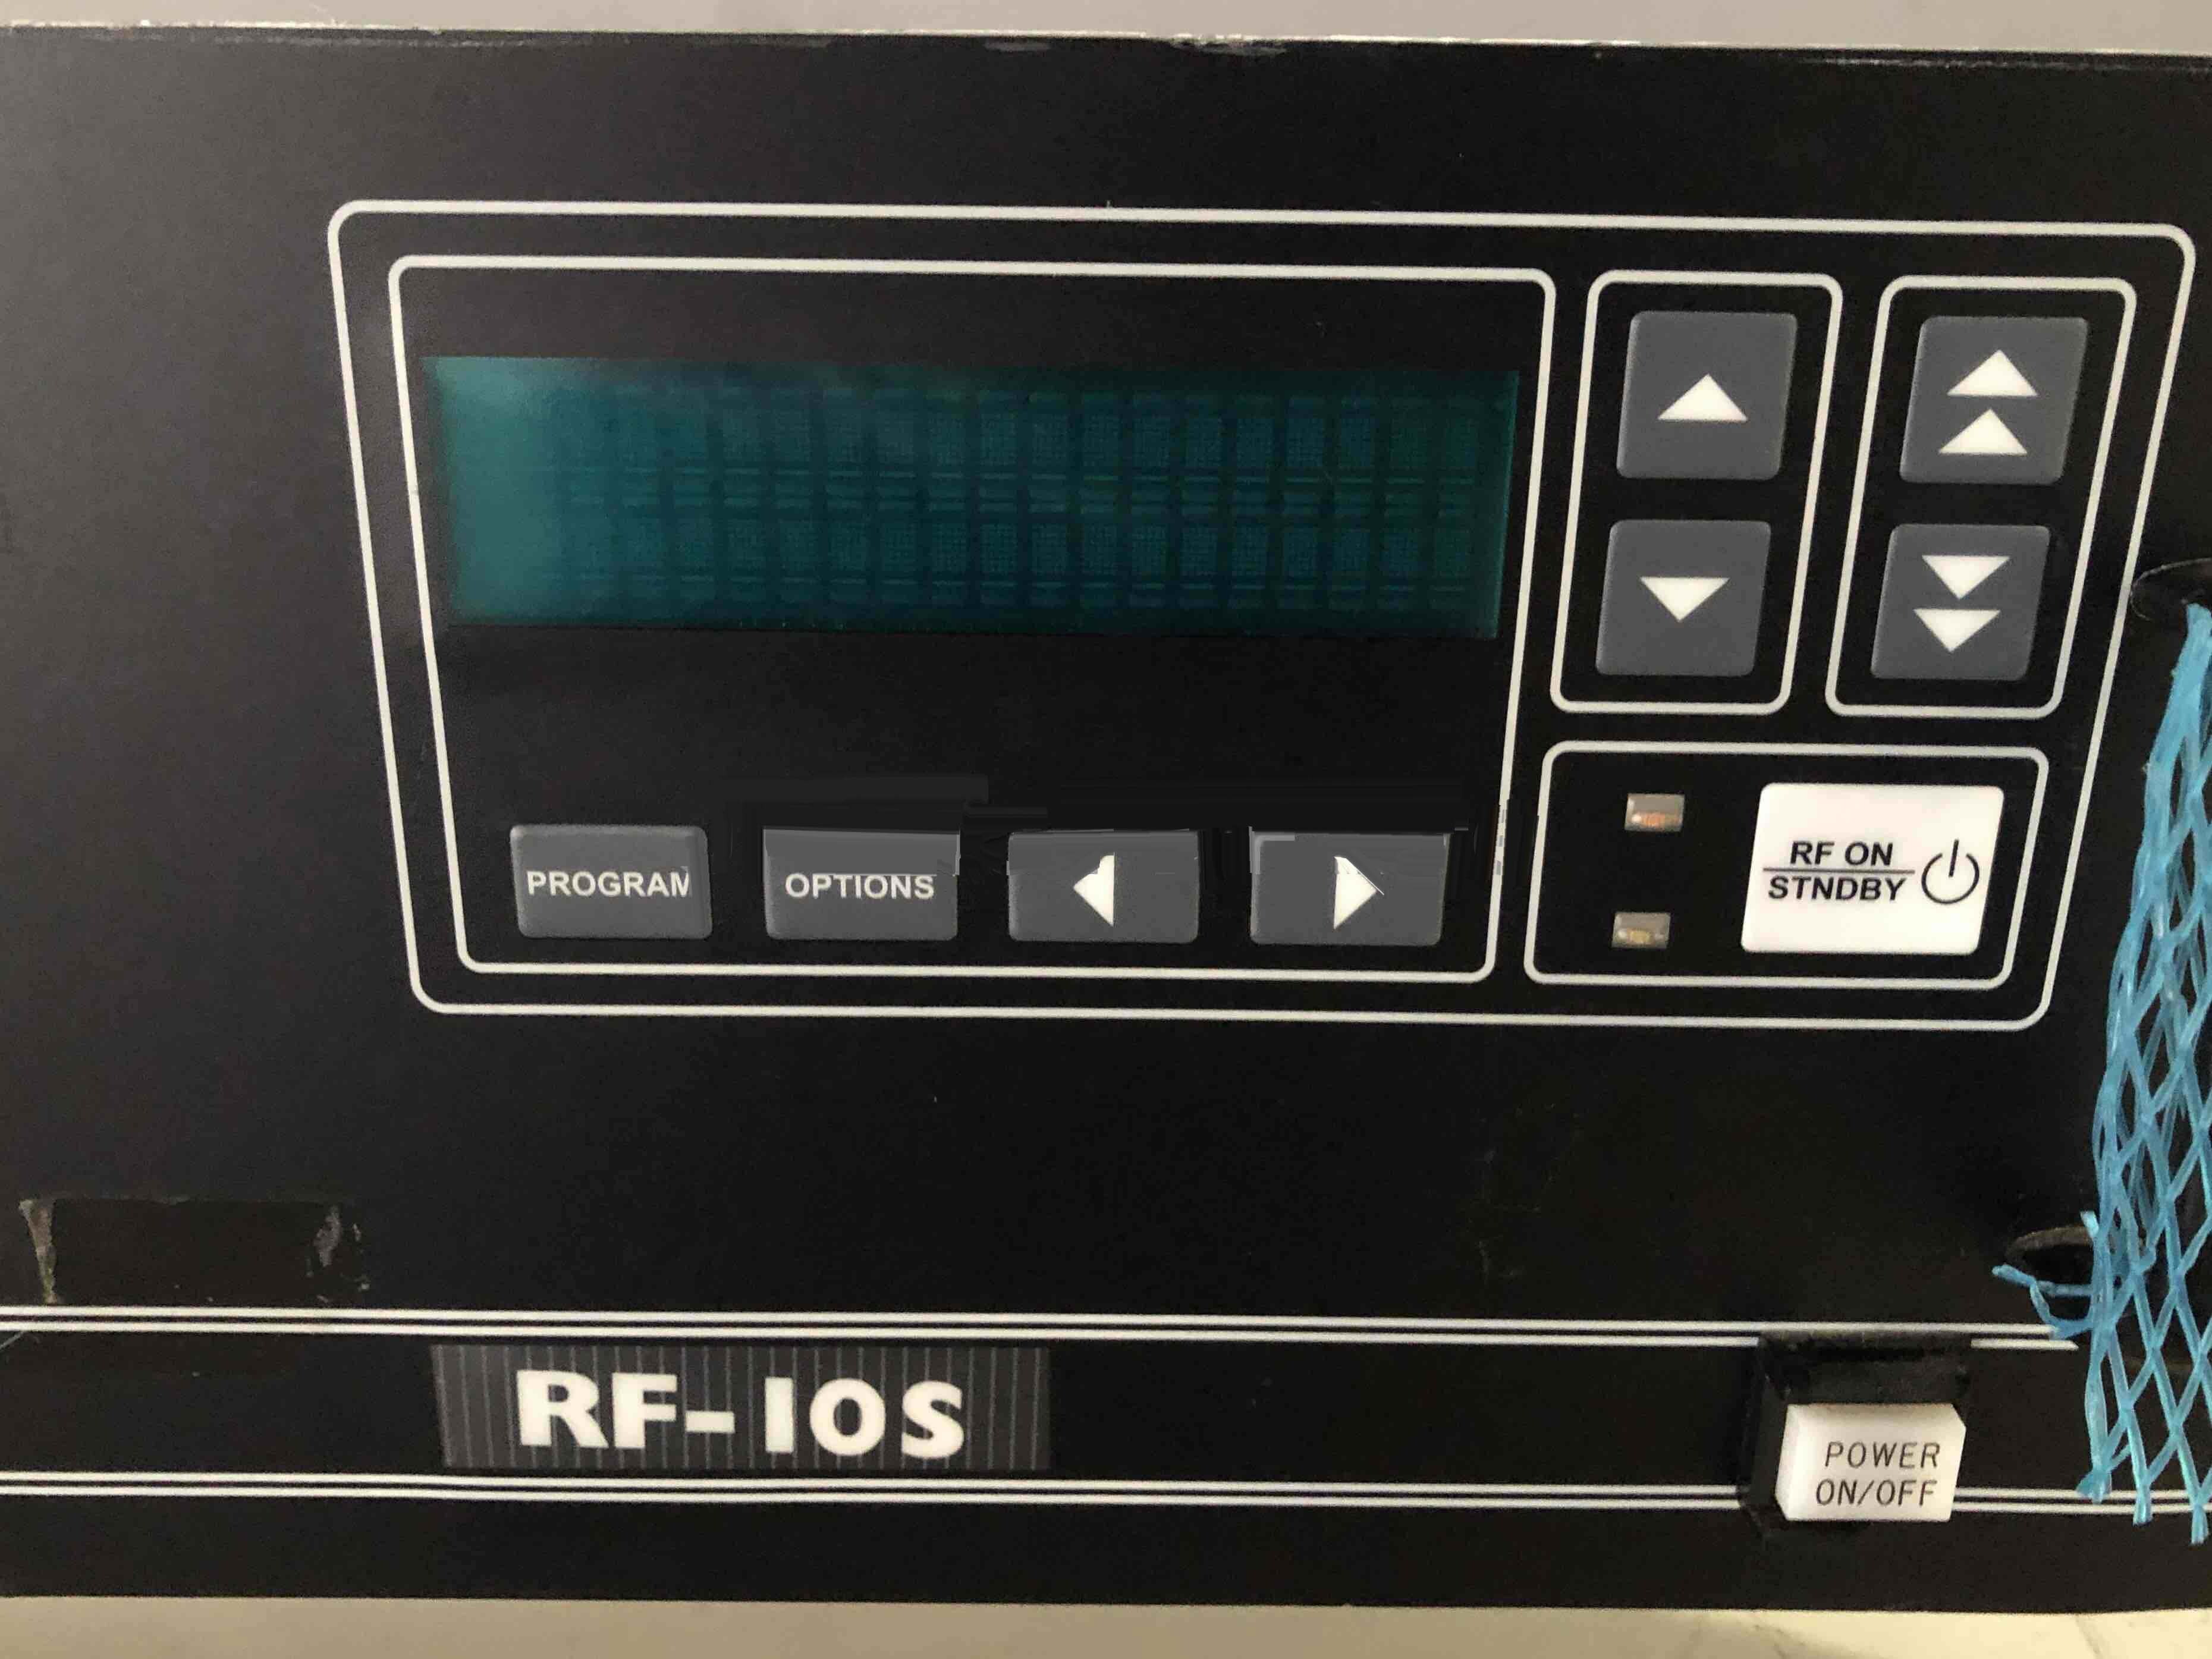 圖為 已使用的 RFPP RF10S 待售